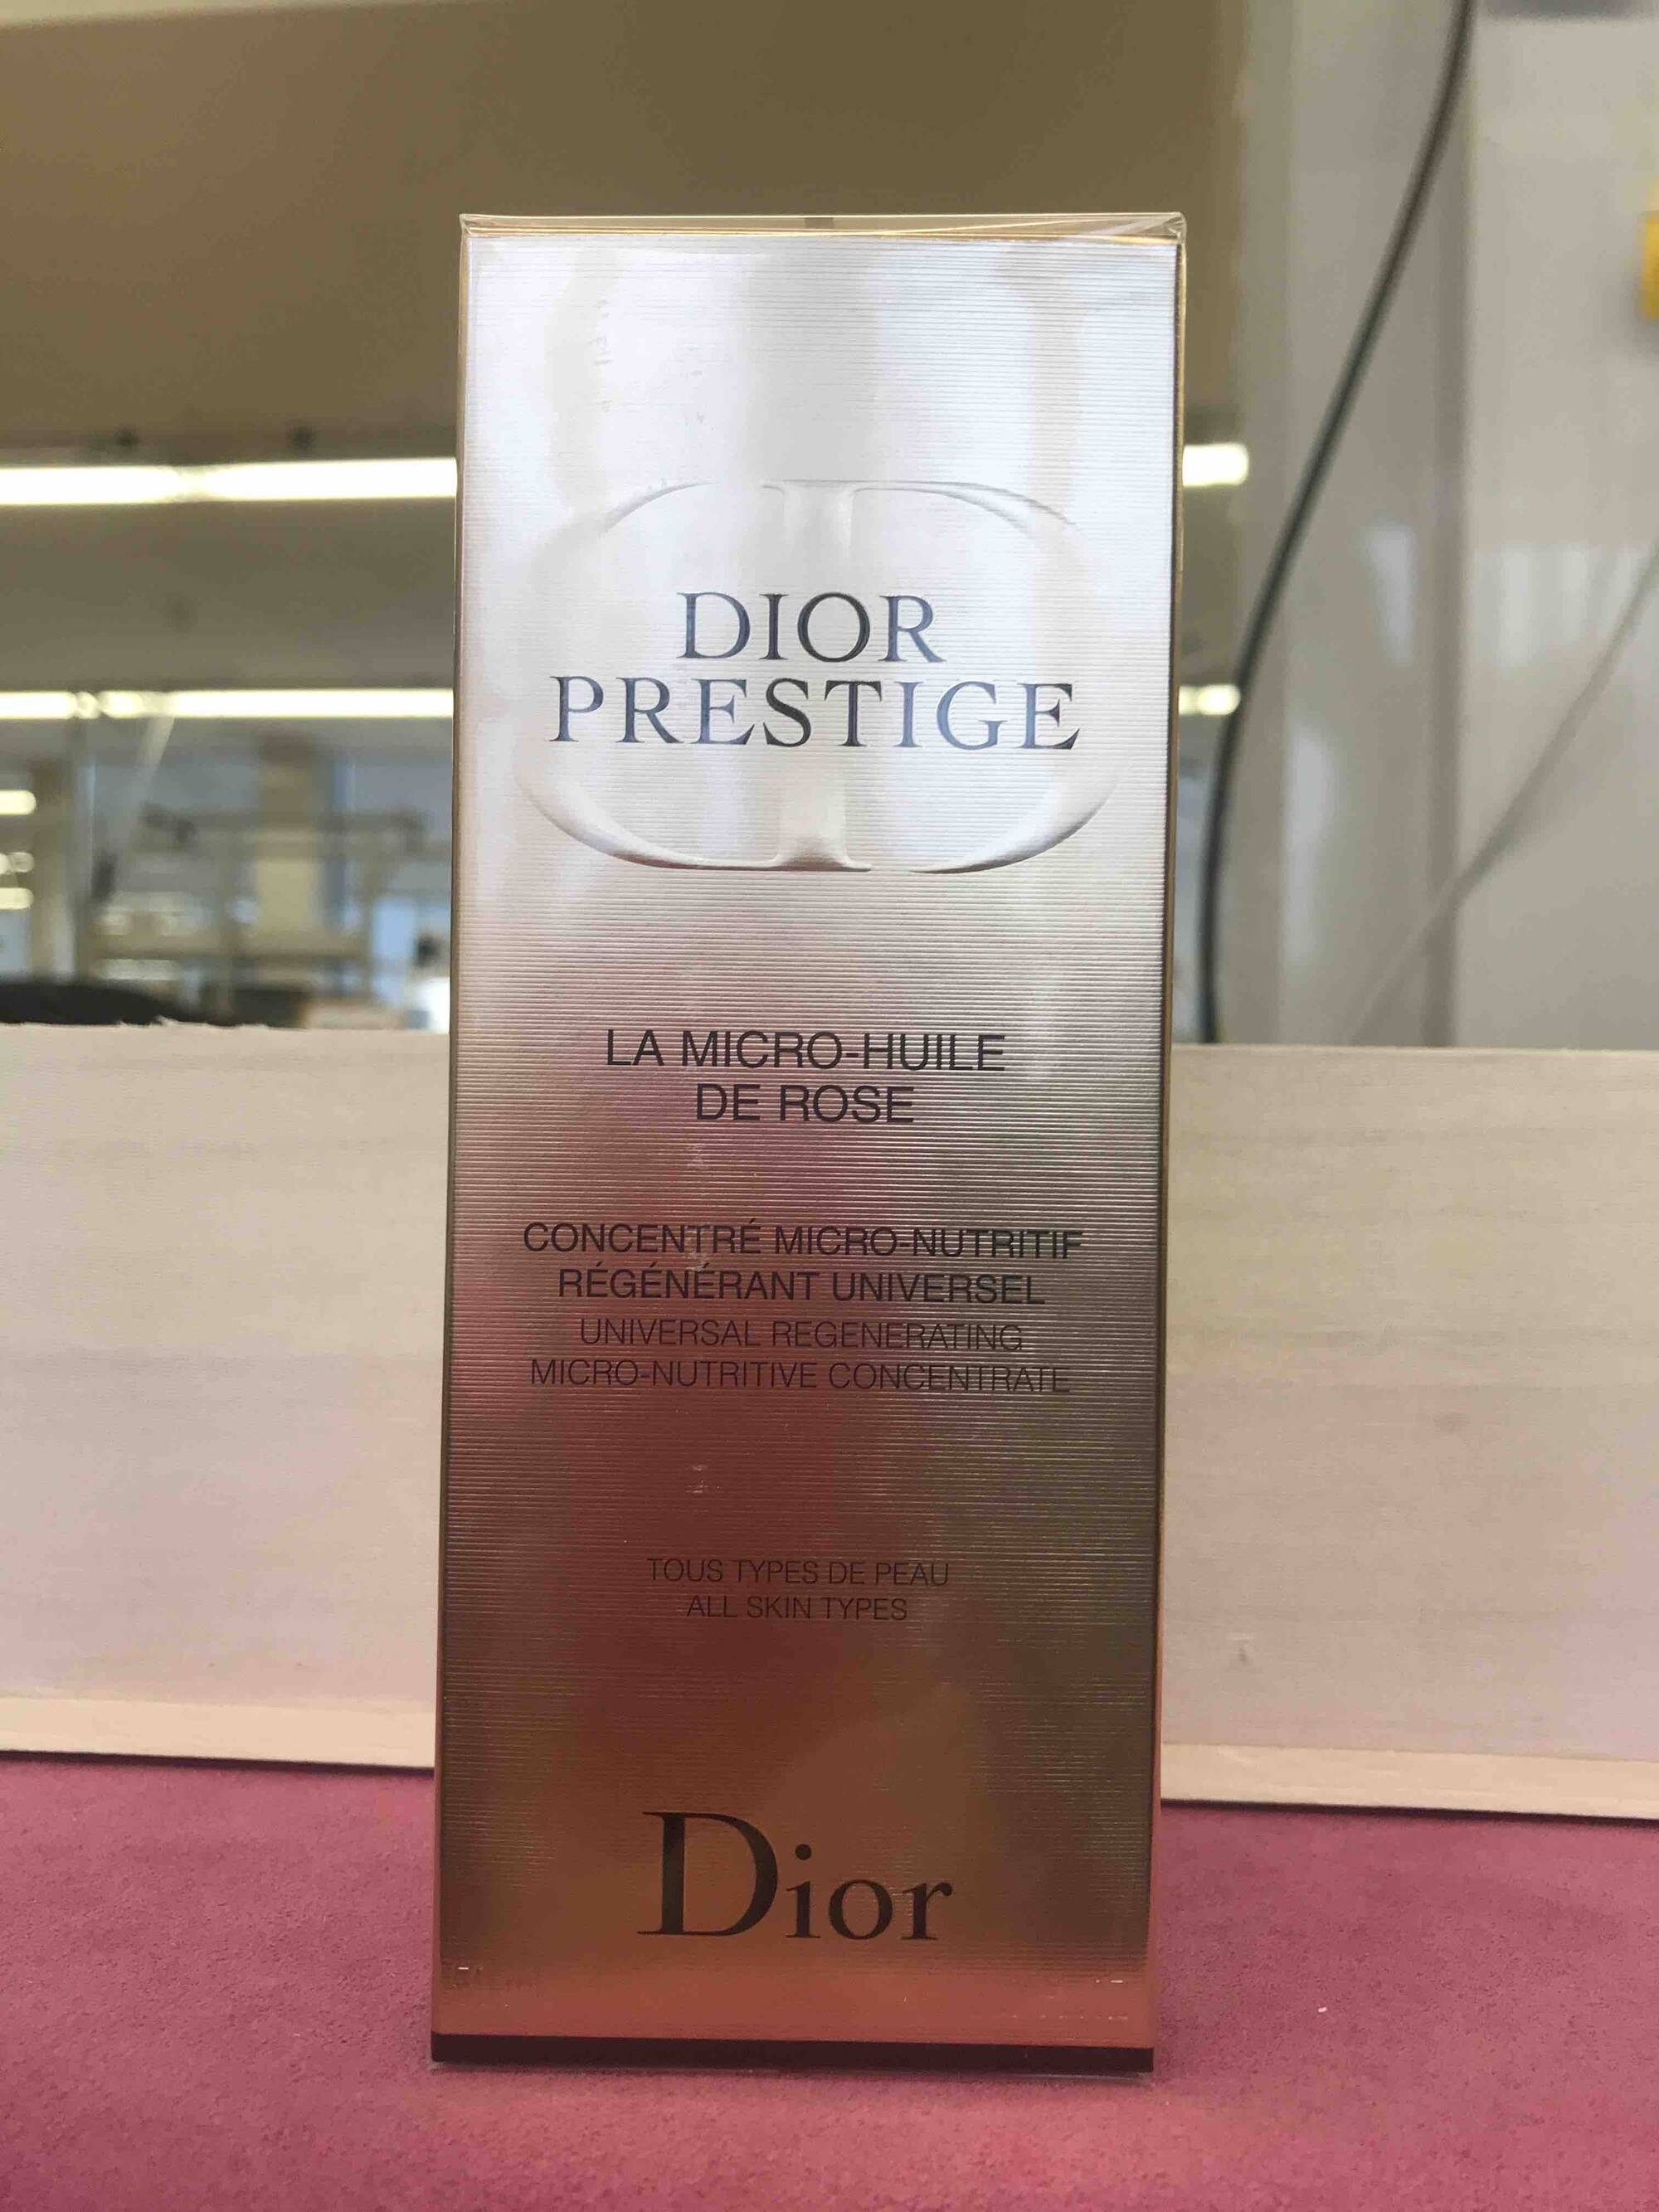 DIOR - Dior prestige - La micro-huile de rose